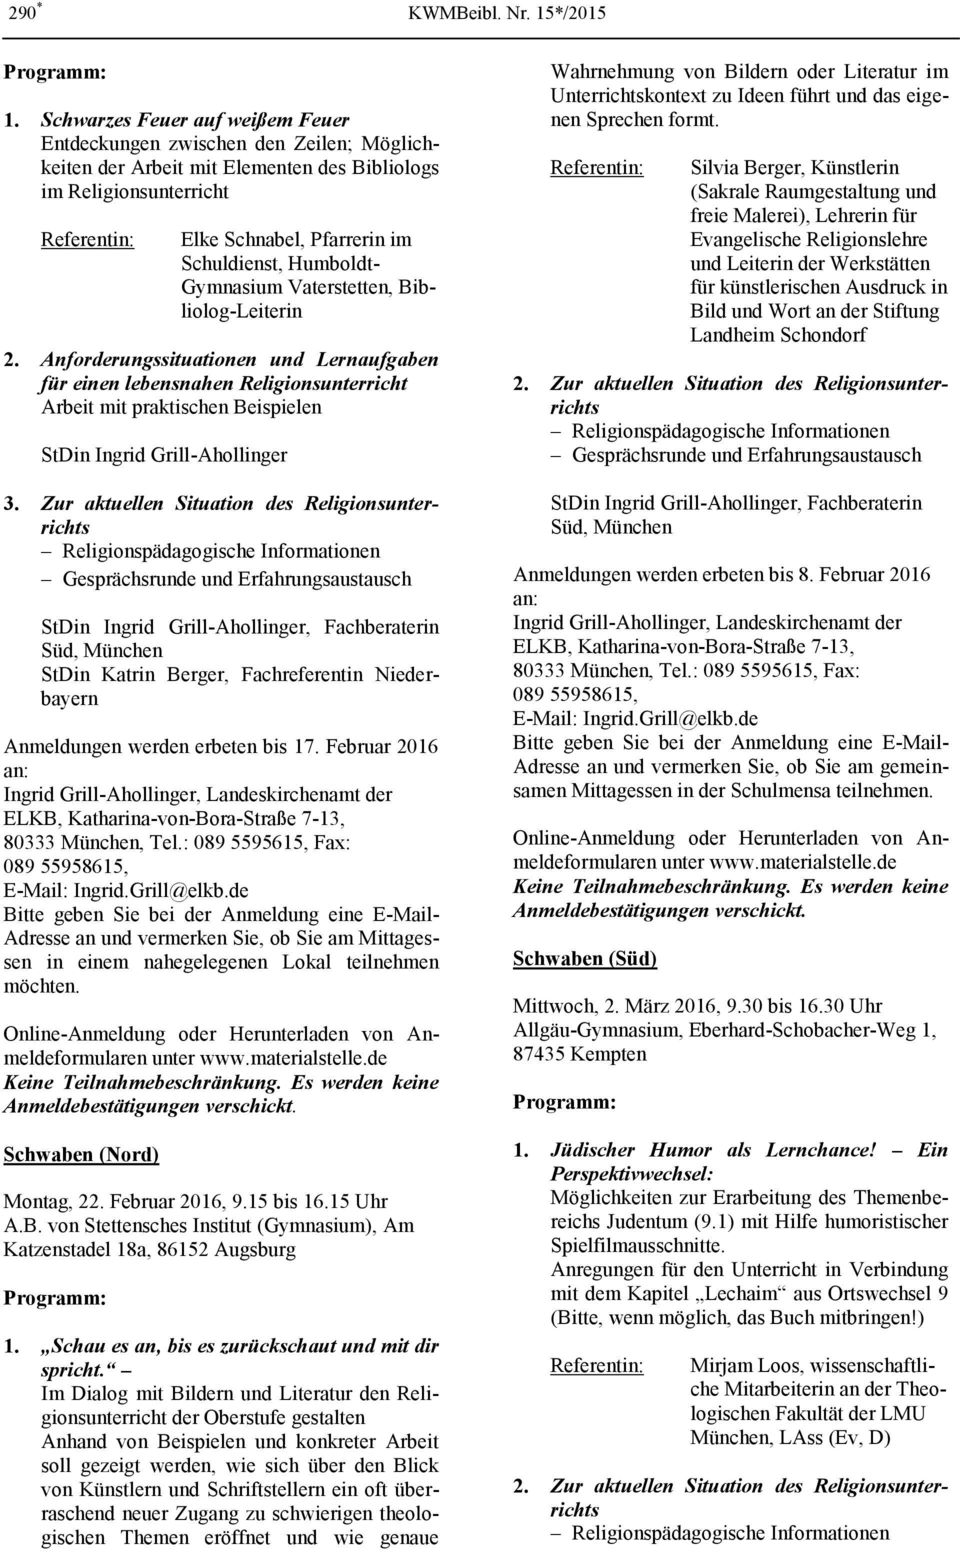 Humboldt- Gymnasium Vaterstetten, Bibliolog-Leiterin 2.